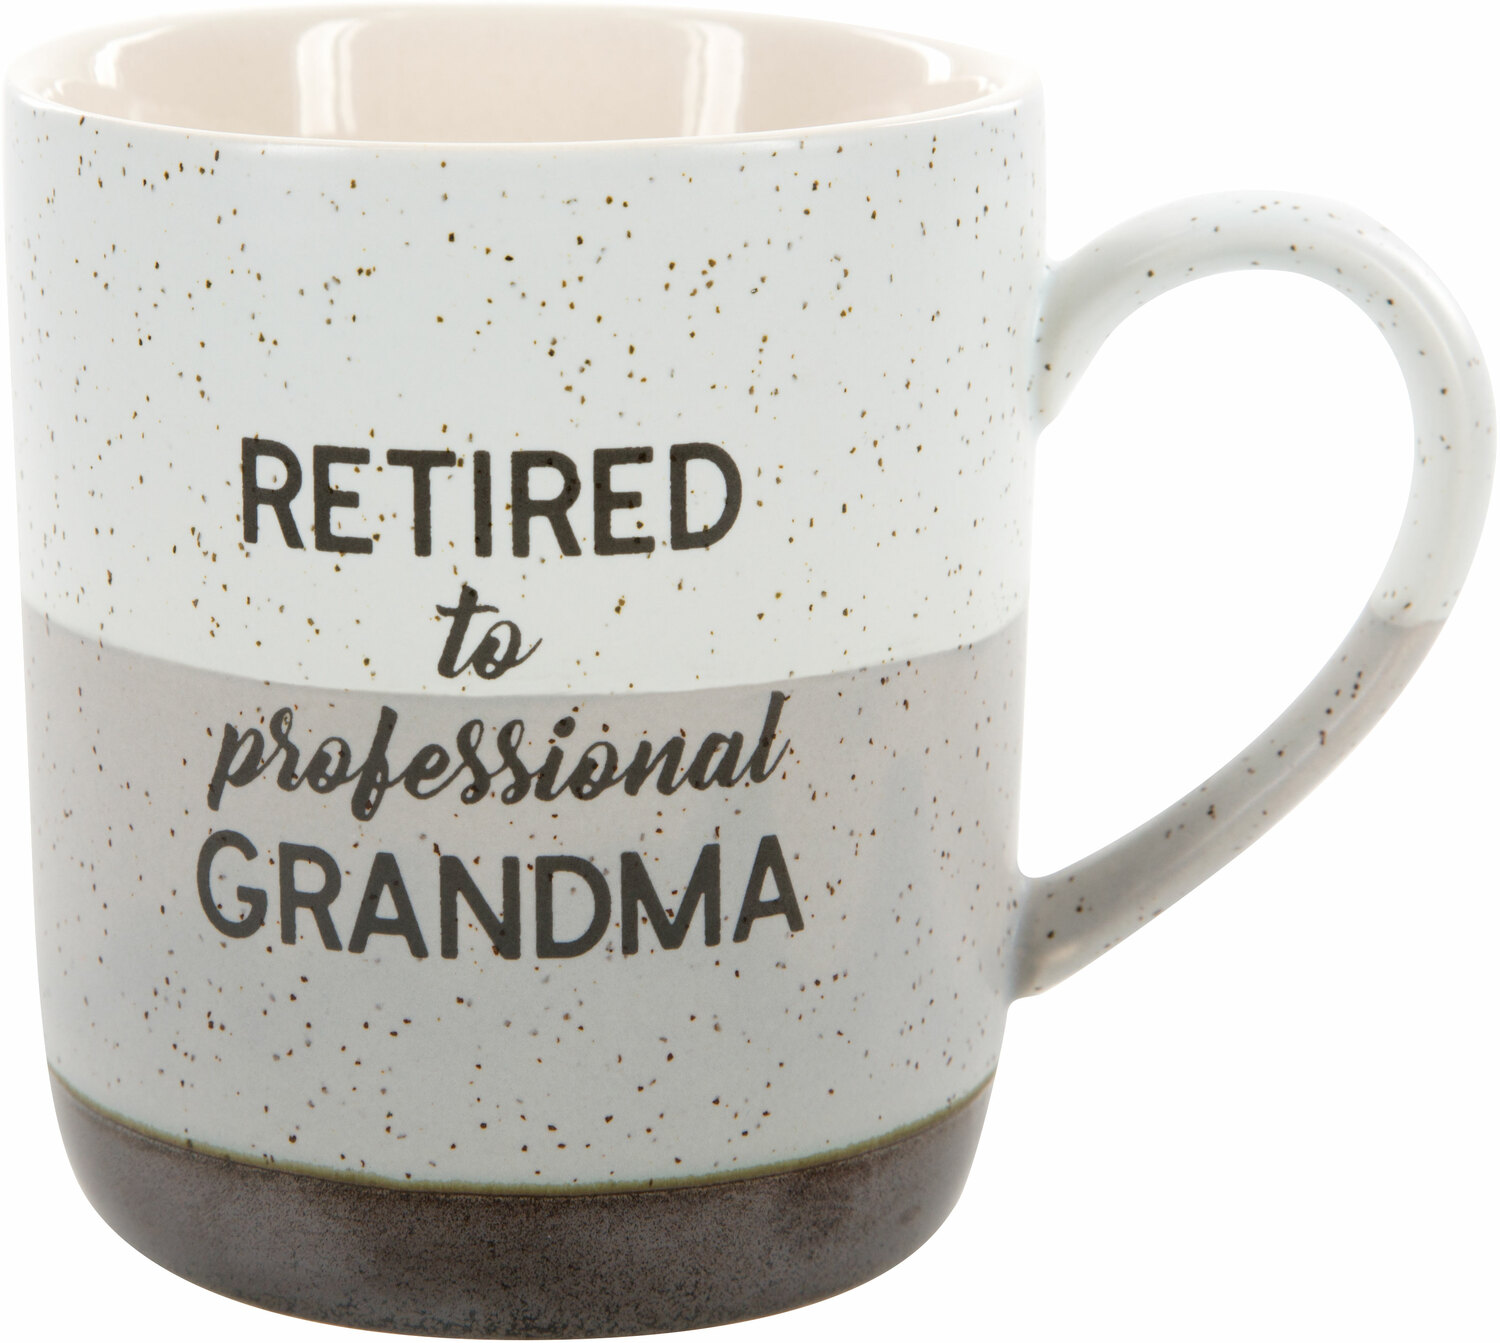 Professional Grandma by Retired Life - Professional Grandma - 15 oz Mug